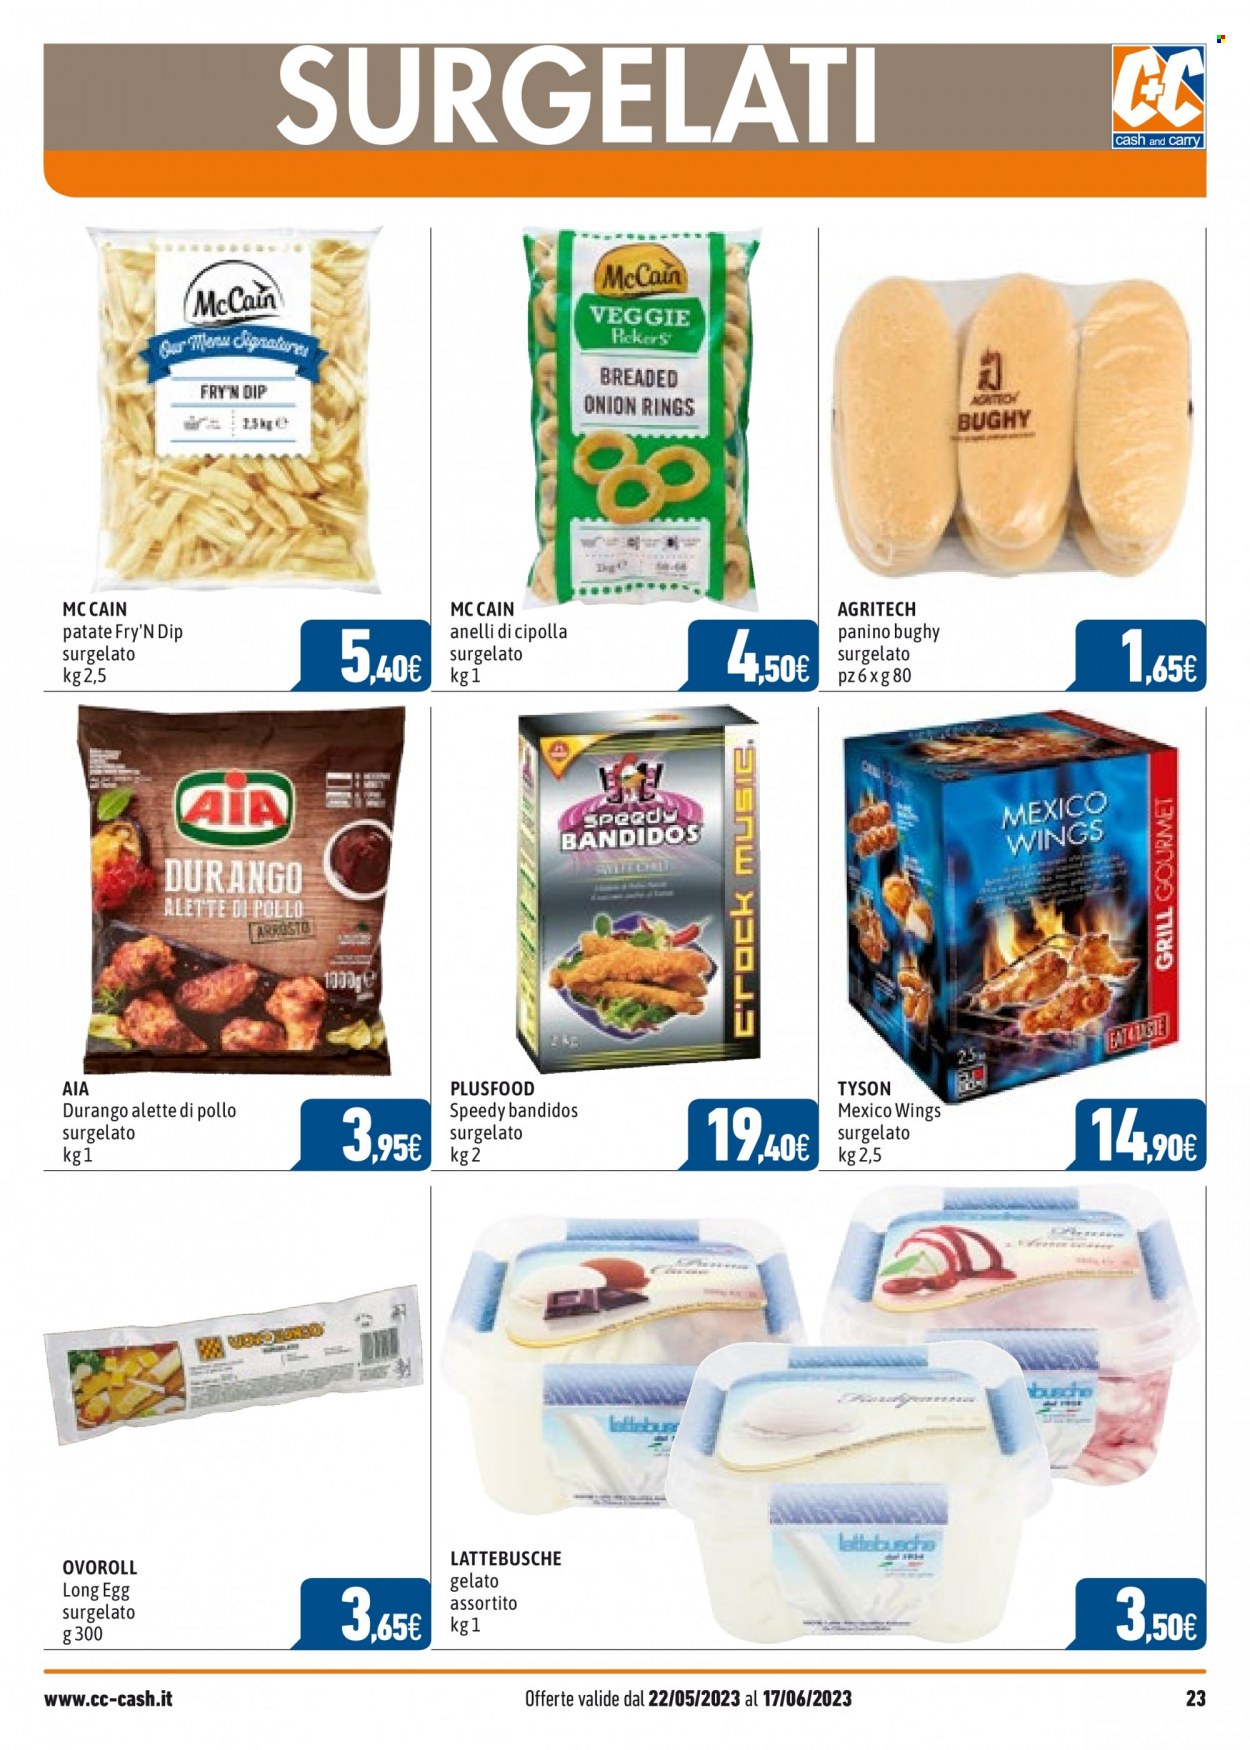 thumbnail - Volantino C+C Cash & Carry - 22/5/2023 - 17/6/2023 - Prodotti in offerta - alette di pollo, AIA, anelli di cipolla fritti, gelato, McCain, patatine fritte. Pagina 23.